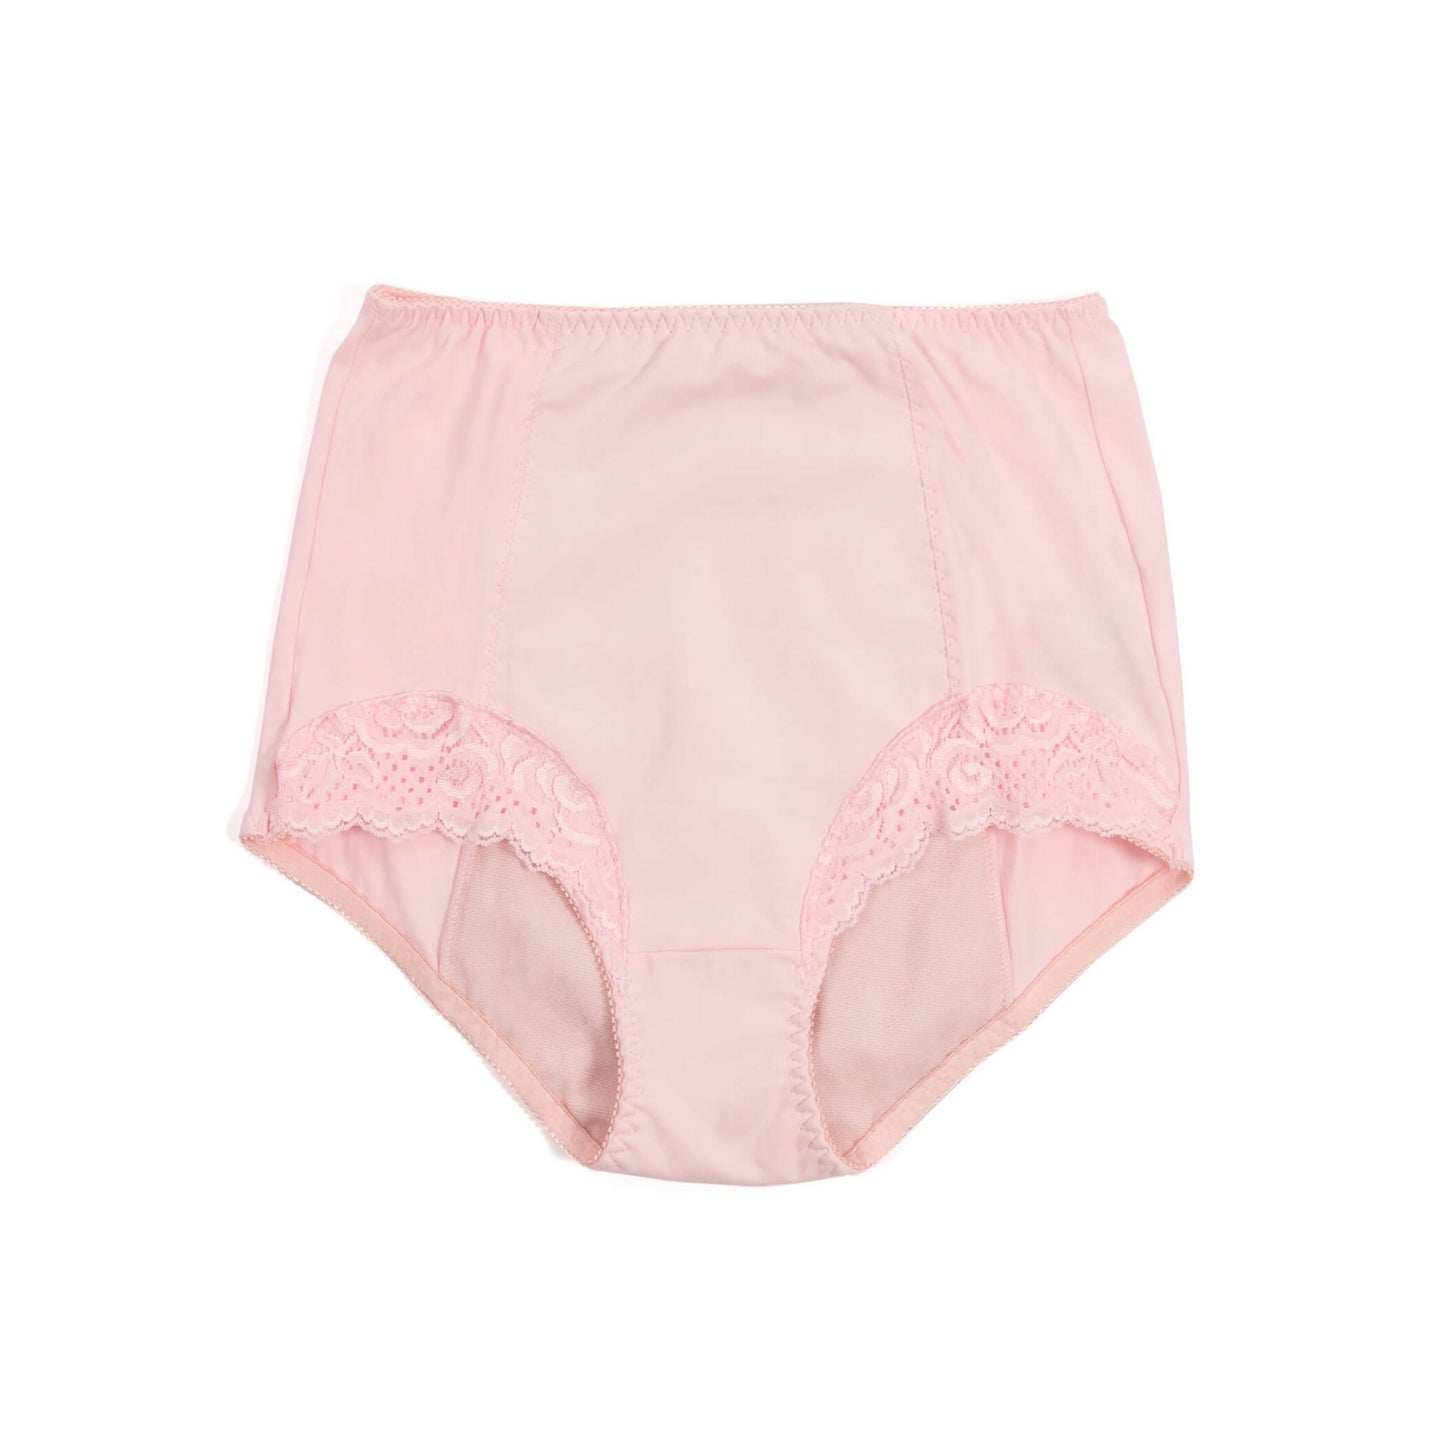 Conni Ladies Chantilly Underwear (1)